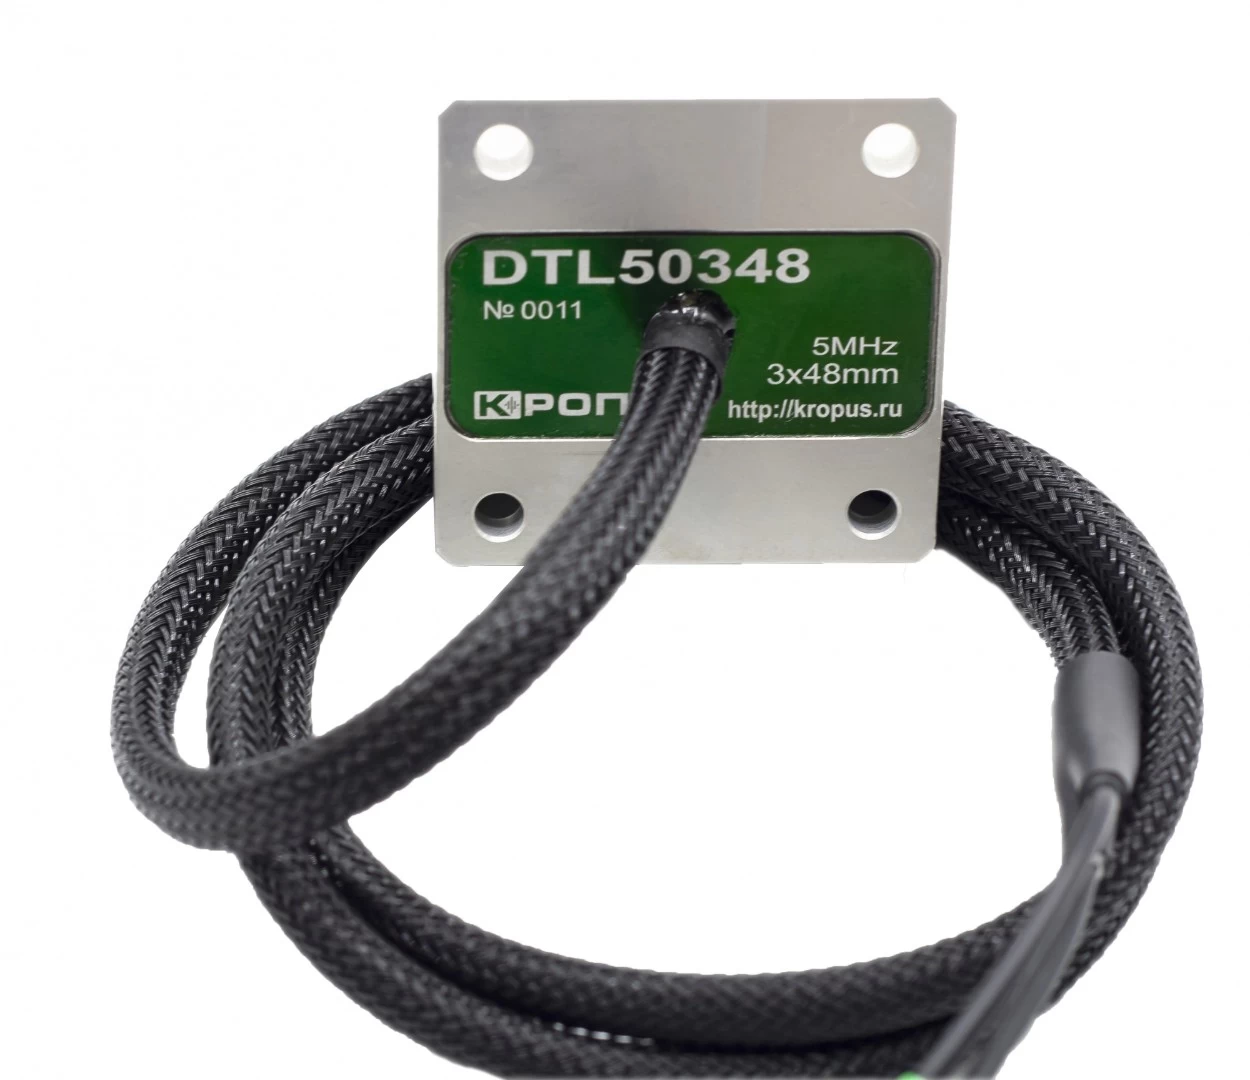 DTL50348 преобразователь р/с широкозахватный - 2